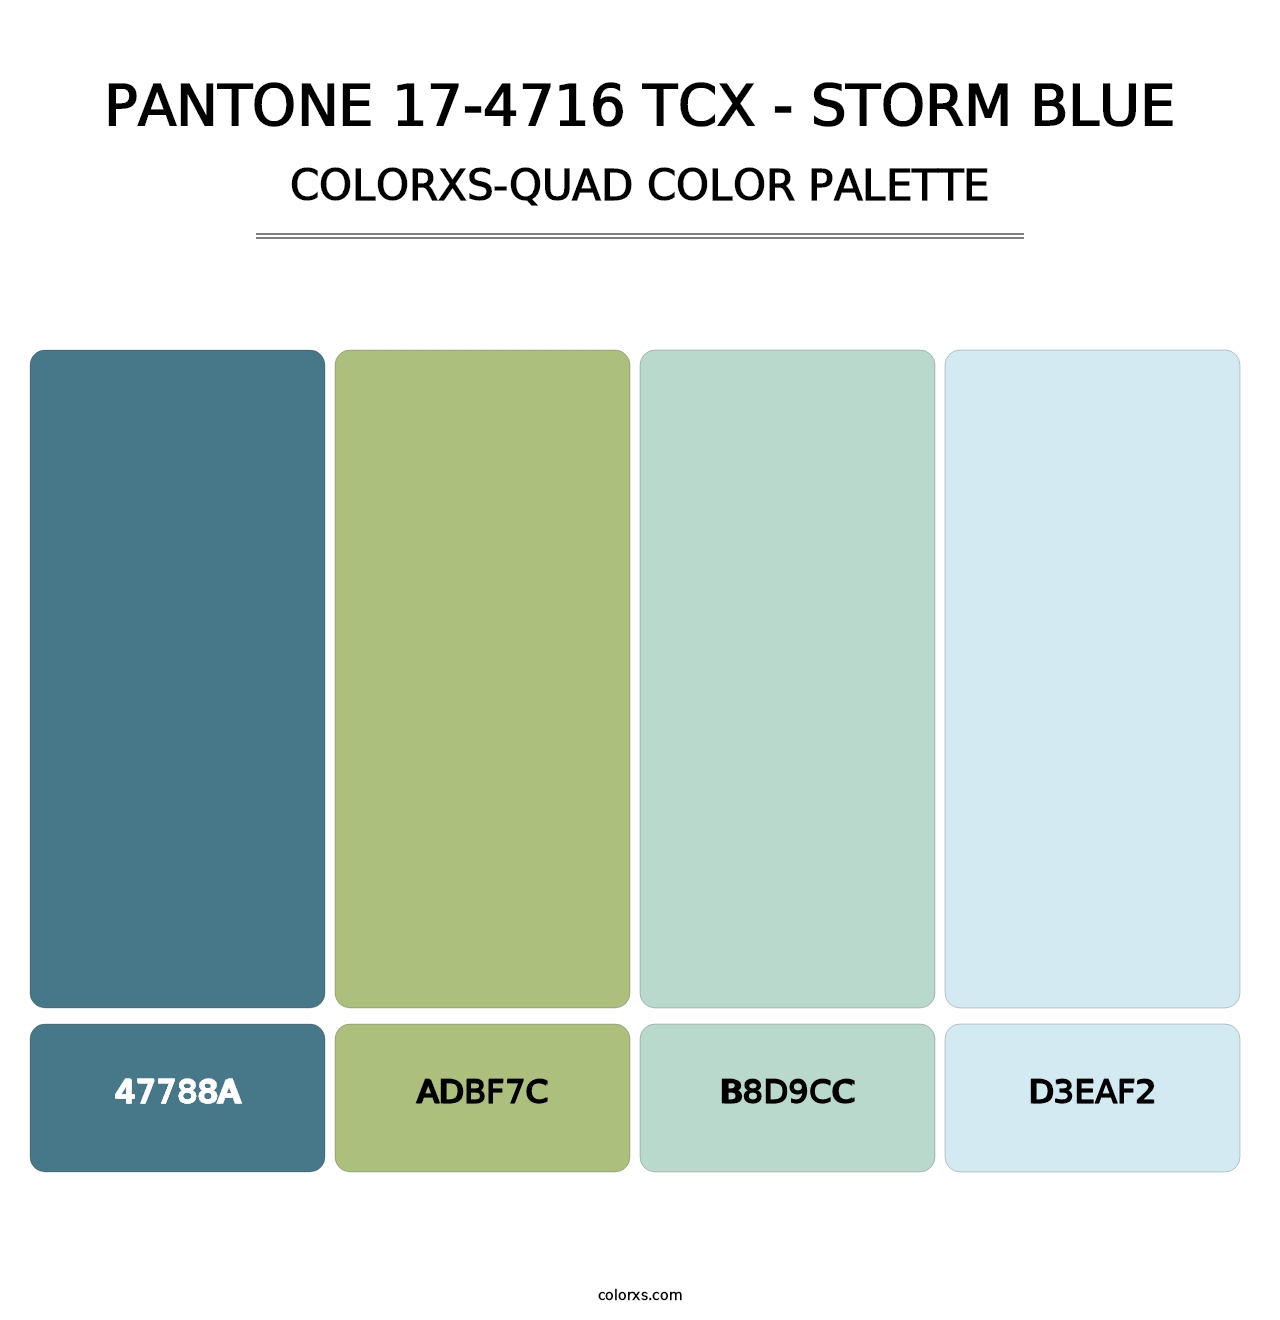 PANTONE 17-4716 TCX - Storm Blue - Colorxs Quad Palette